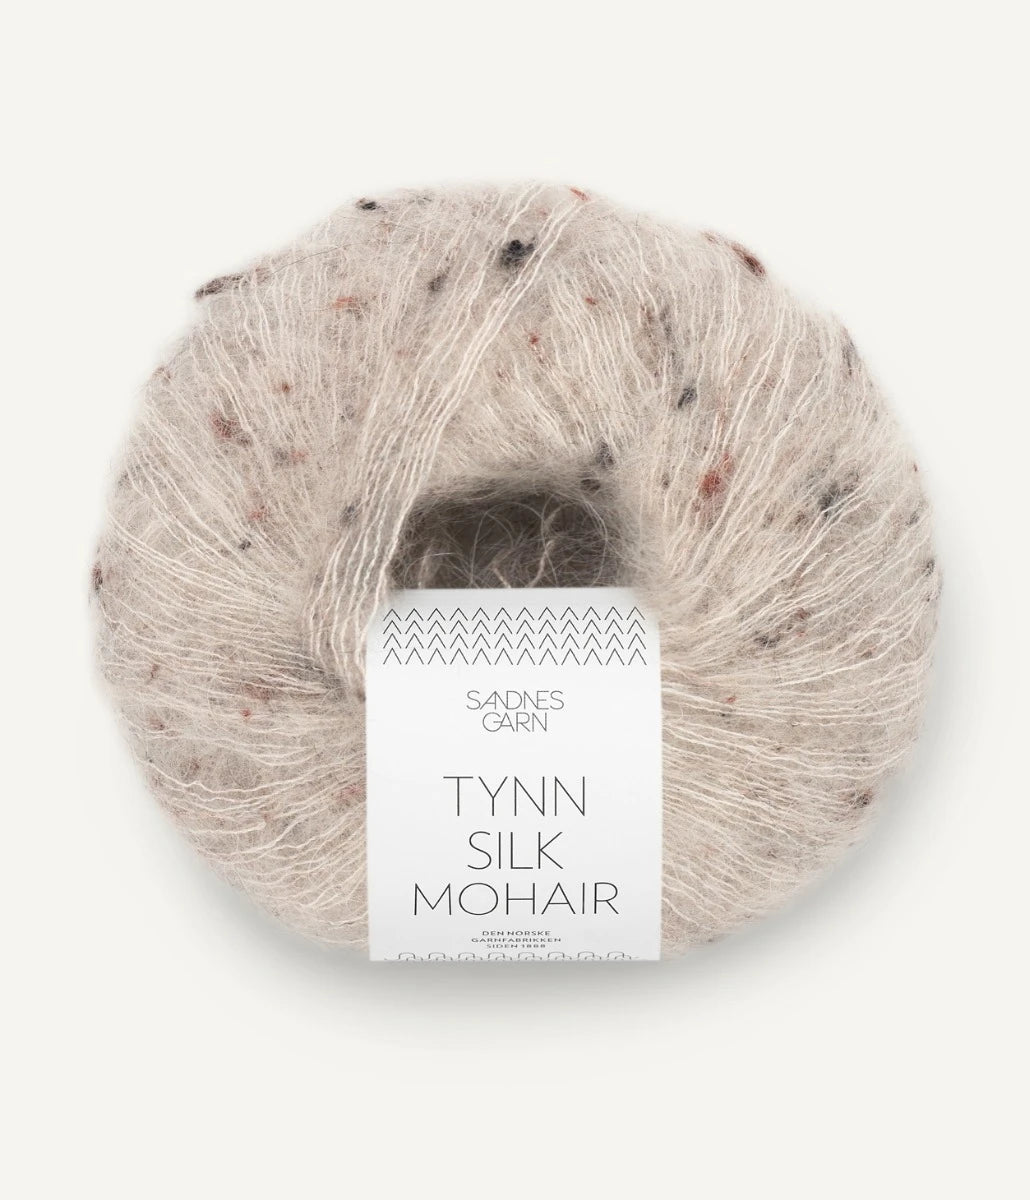 Kuvassa on Sandnes Garn Tynn Silk Mohair -lanka (yarn) värissä Greige Tweed.